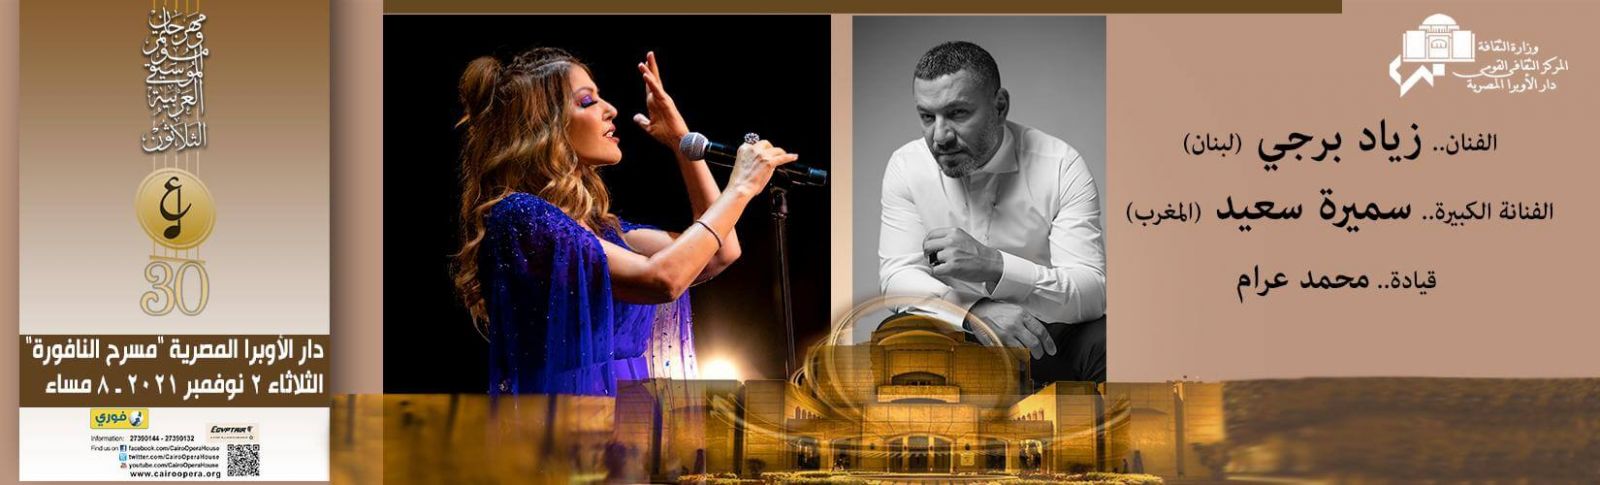 سميرة سعيد في مهرجان الموسيقى العربية 2021